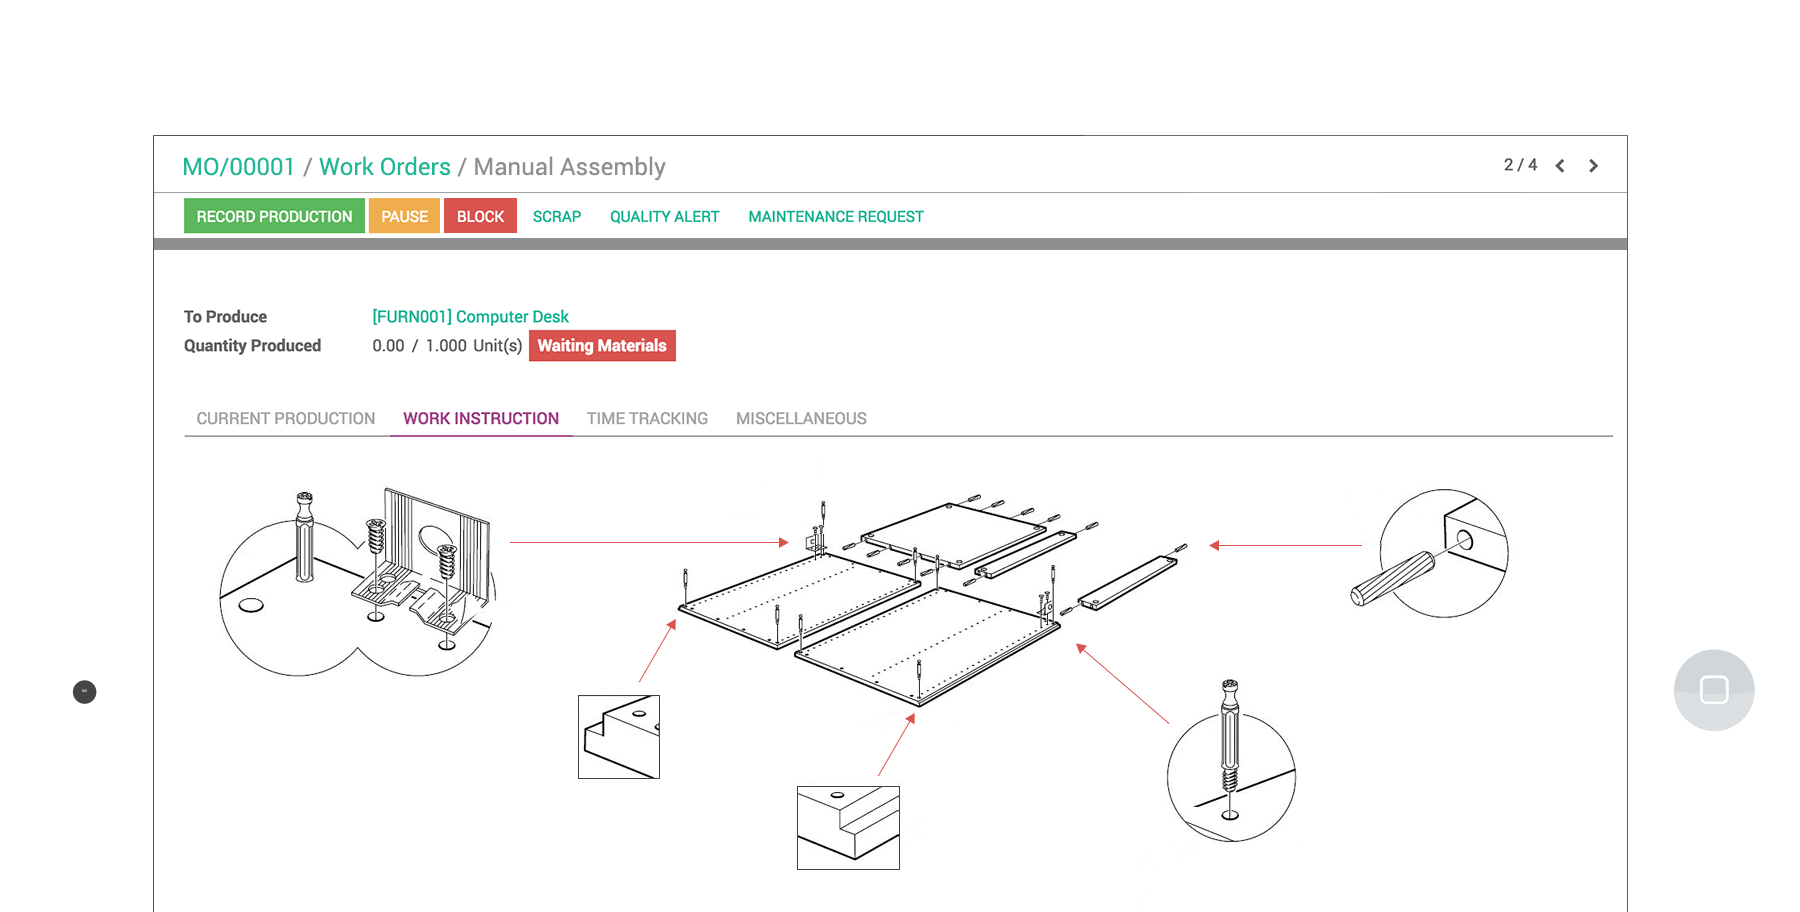 Odoo制造平板电脑界面显示一个工作订单的手工组装